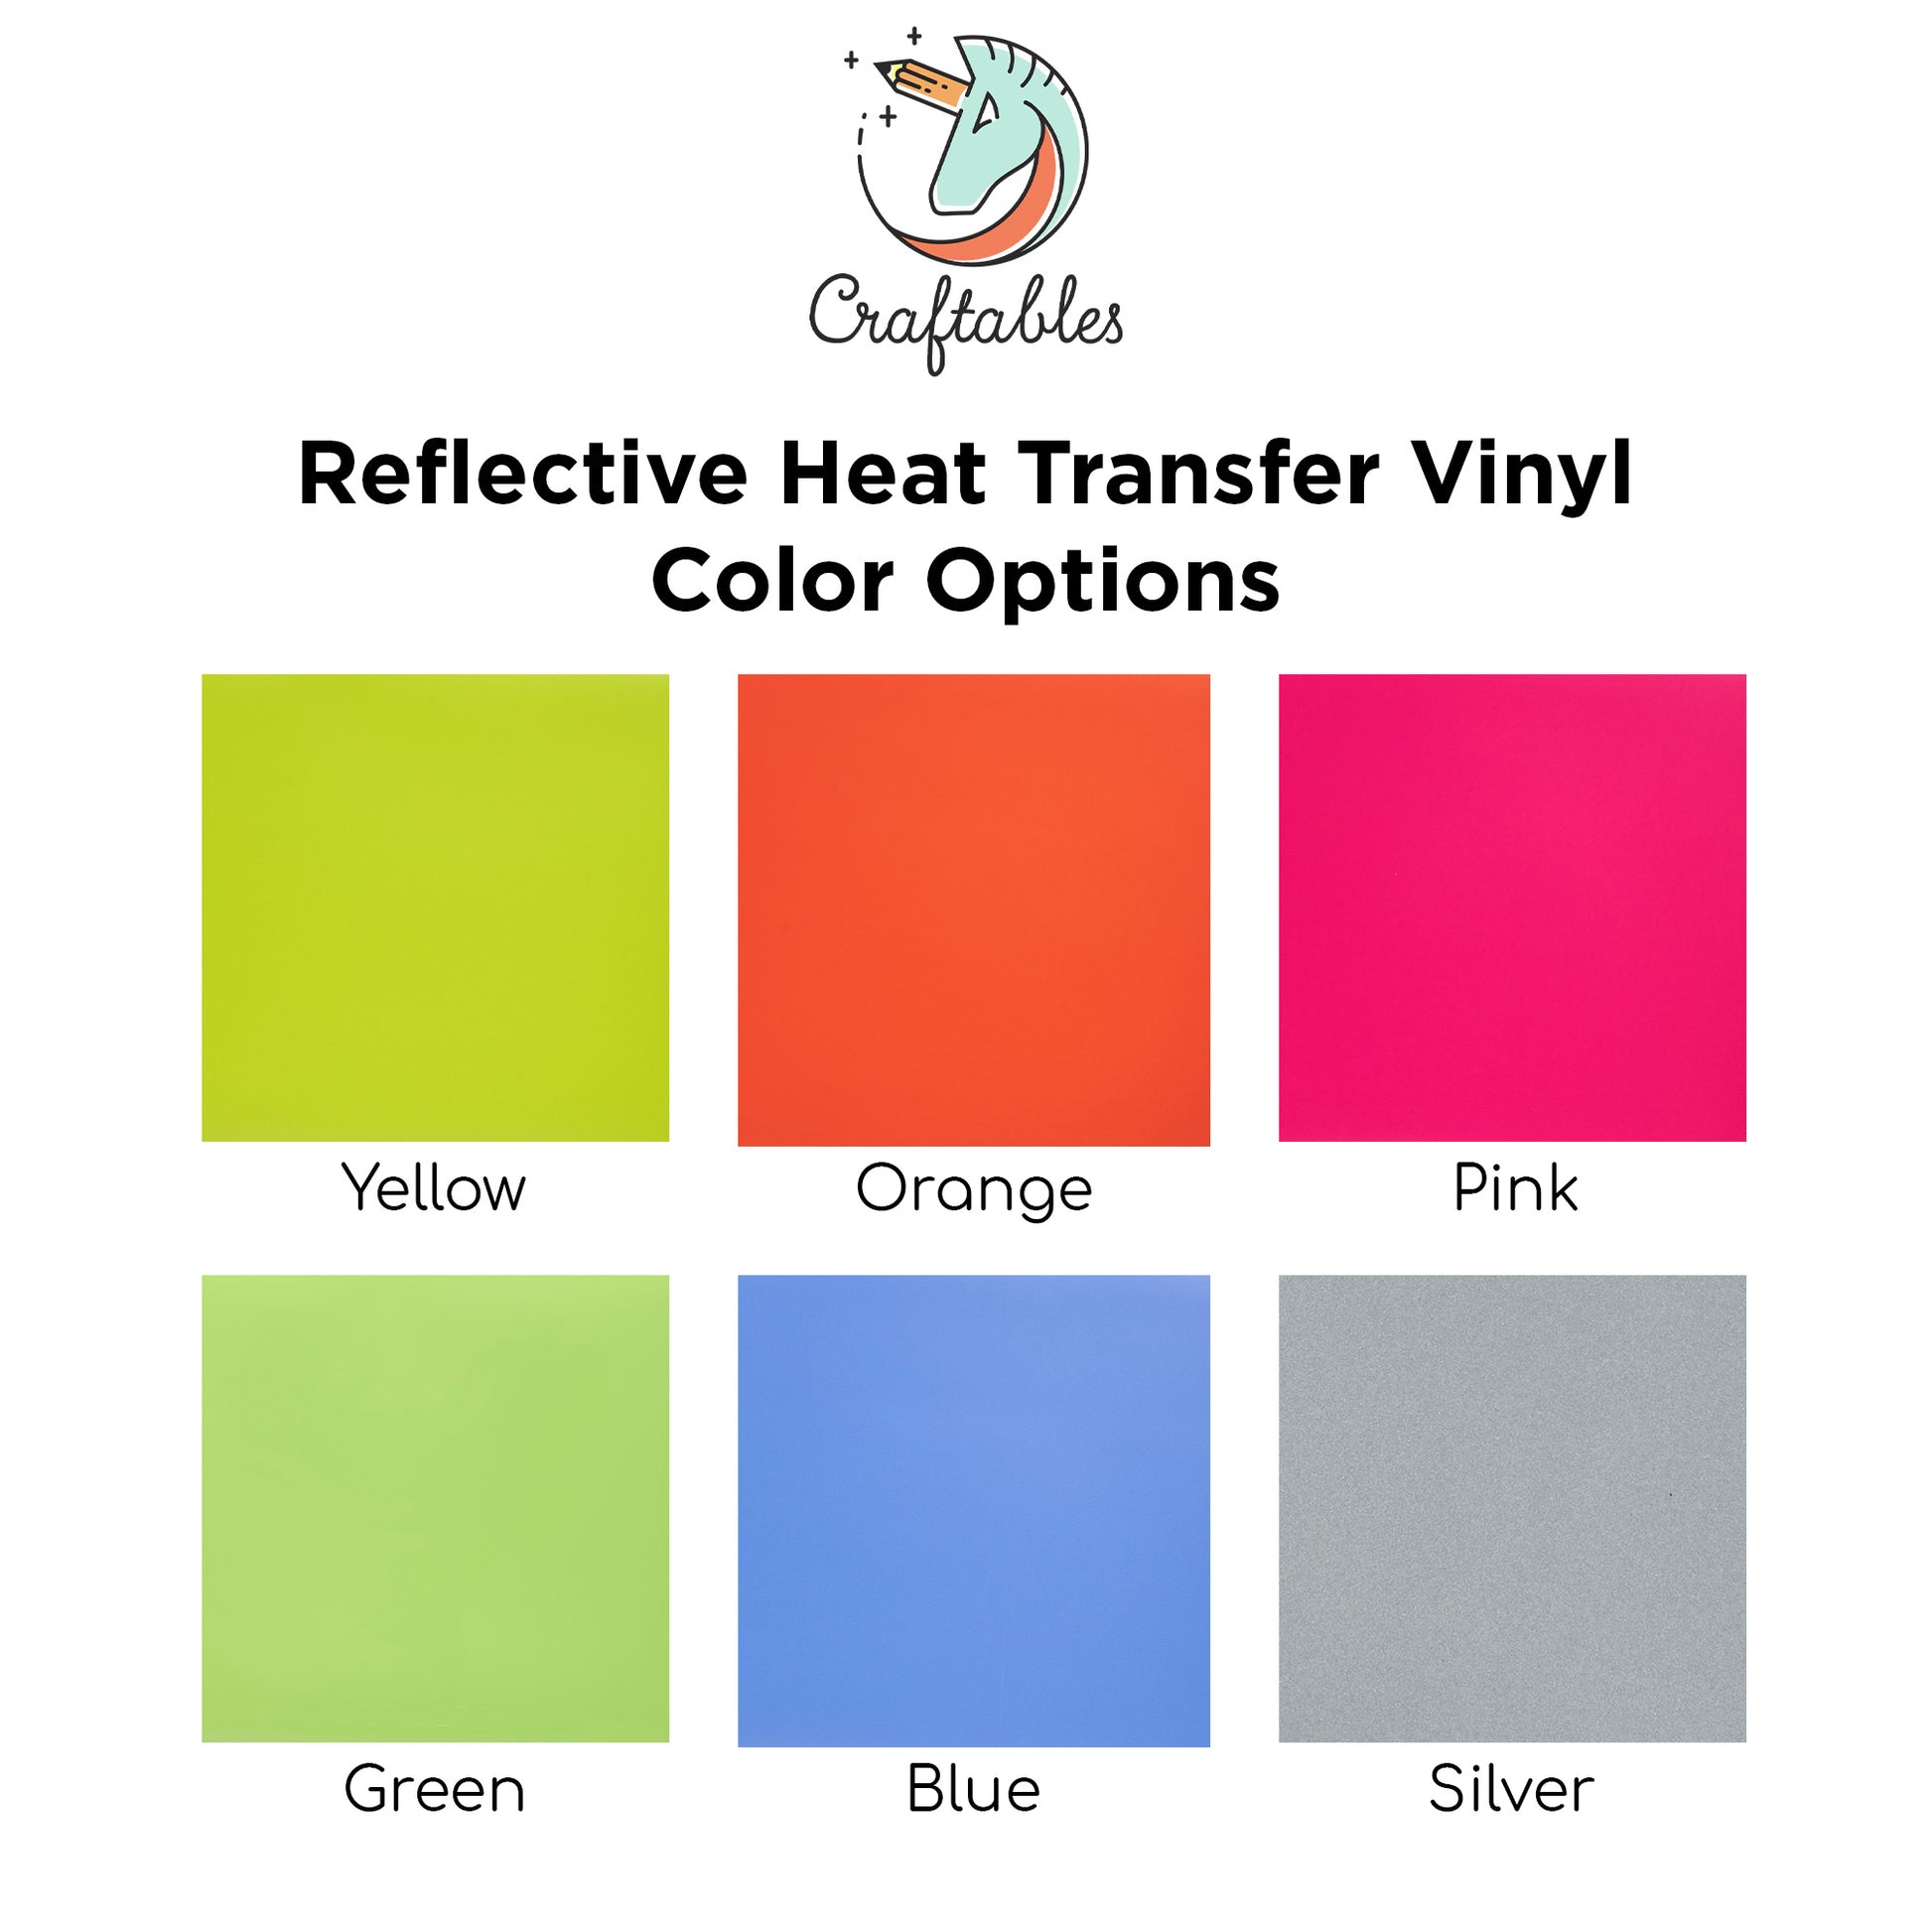 Gold Velvet Heat Transfer Vinyl Sheets By Craftables – shopcraftables